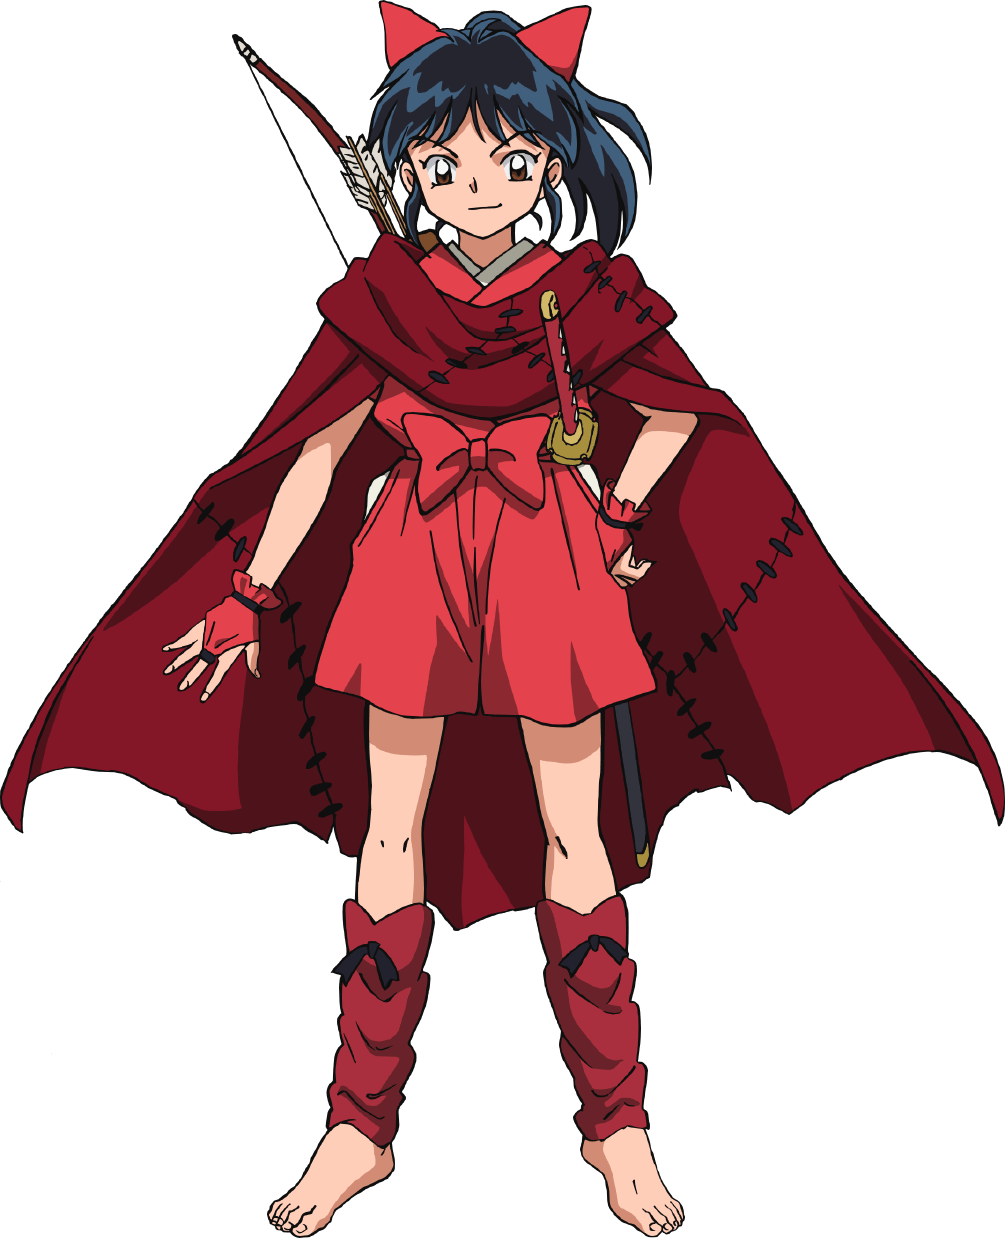 InuYasha Hanyo no Yashahime The Half-Demon Princess Moroha cosplay